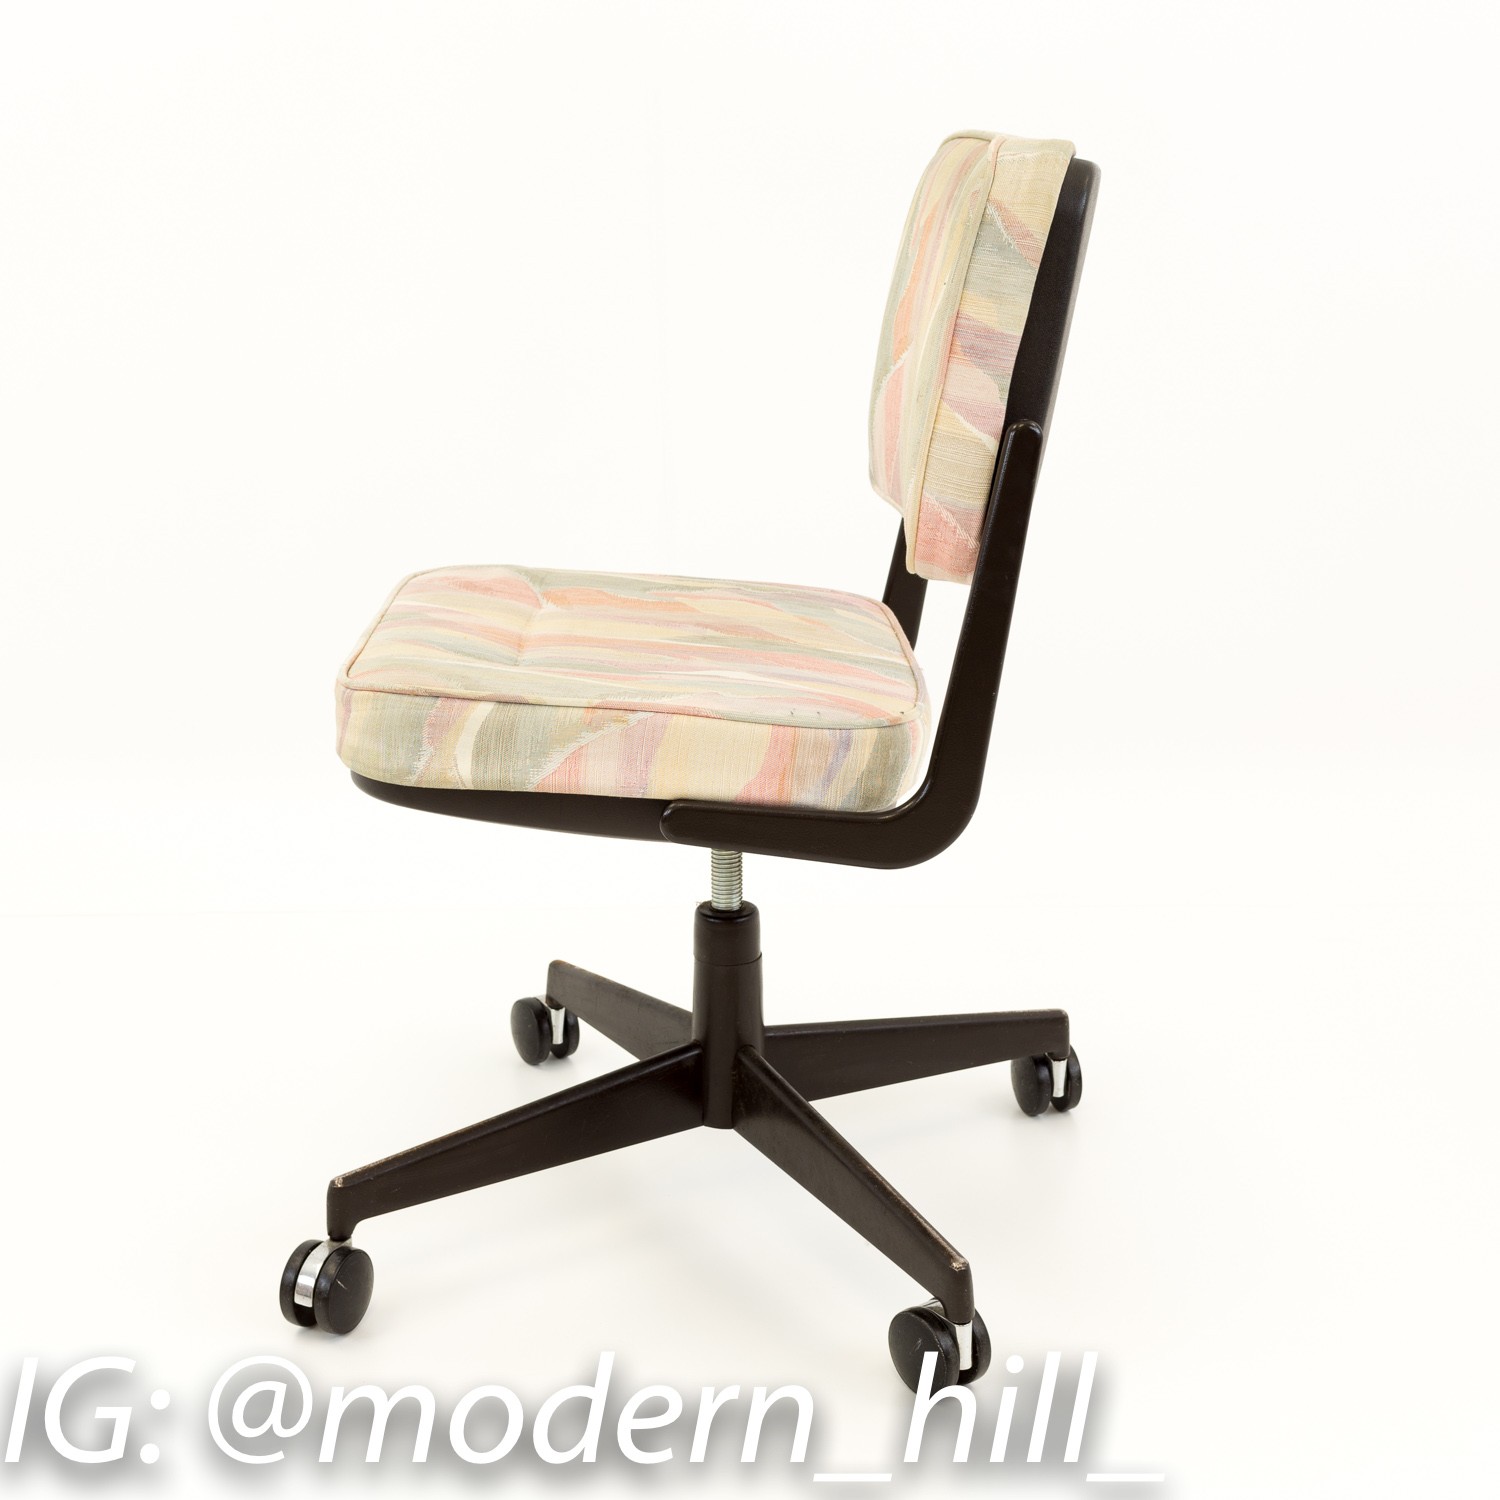 Castelli Style Italian Mid Century Modern Desk Chair